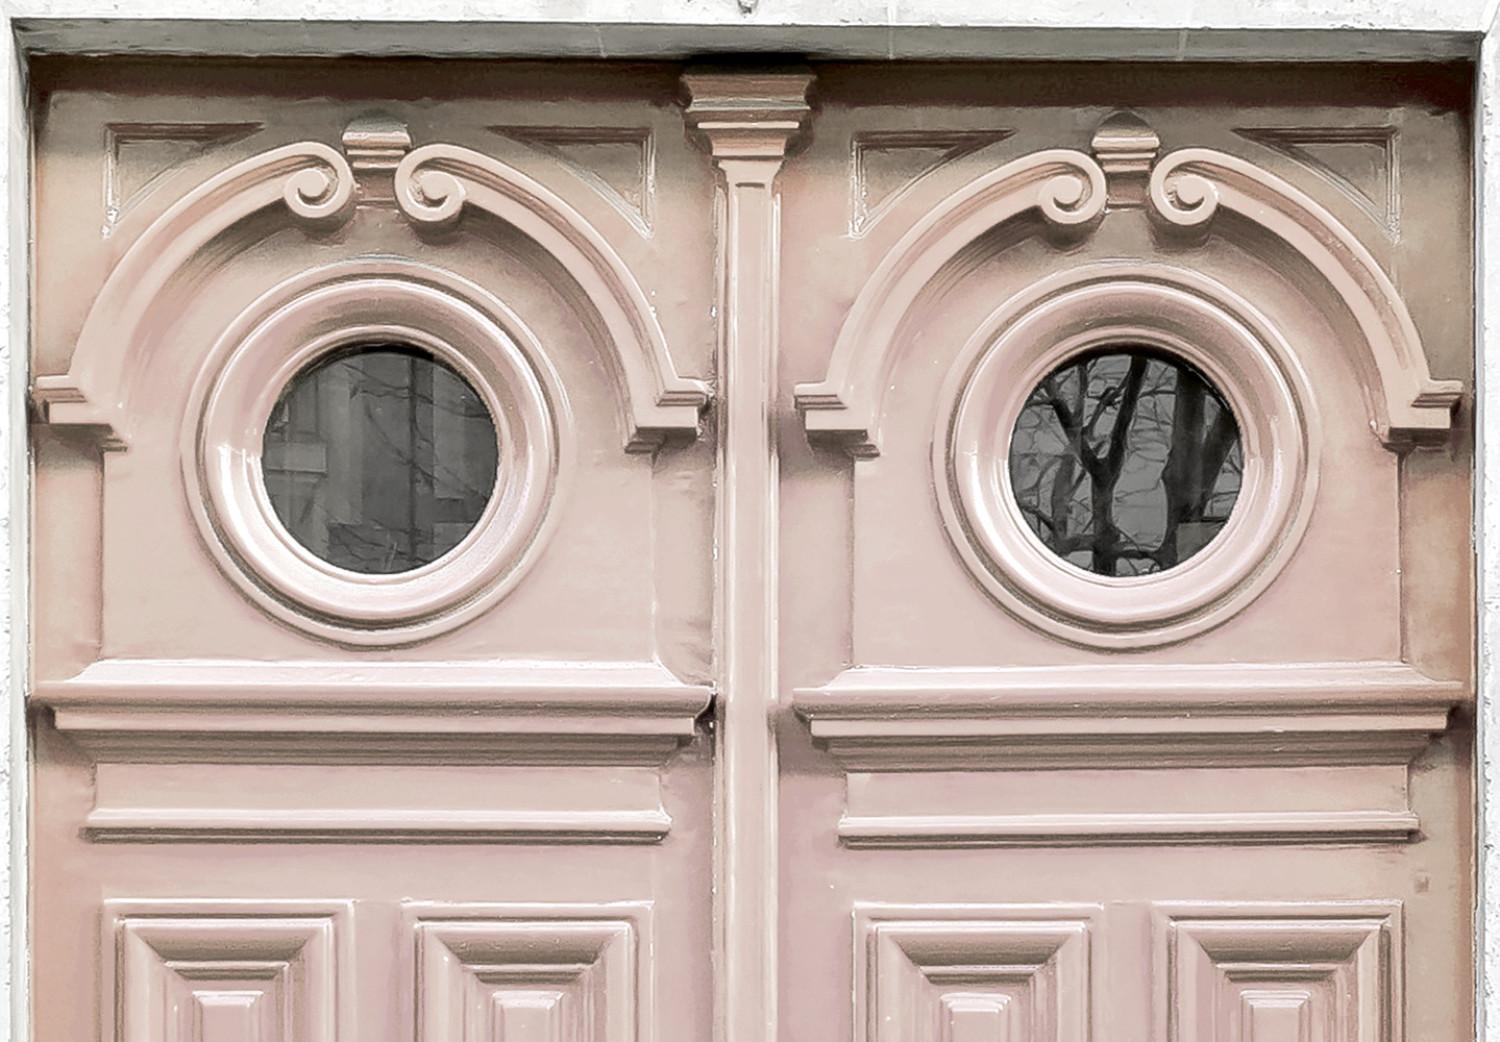 Canvas Pink Paris tenement house door - a photograph of Paris architecture